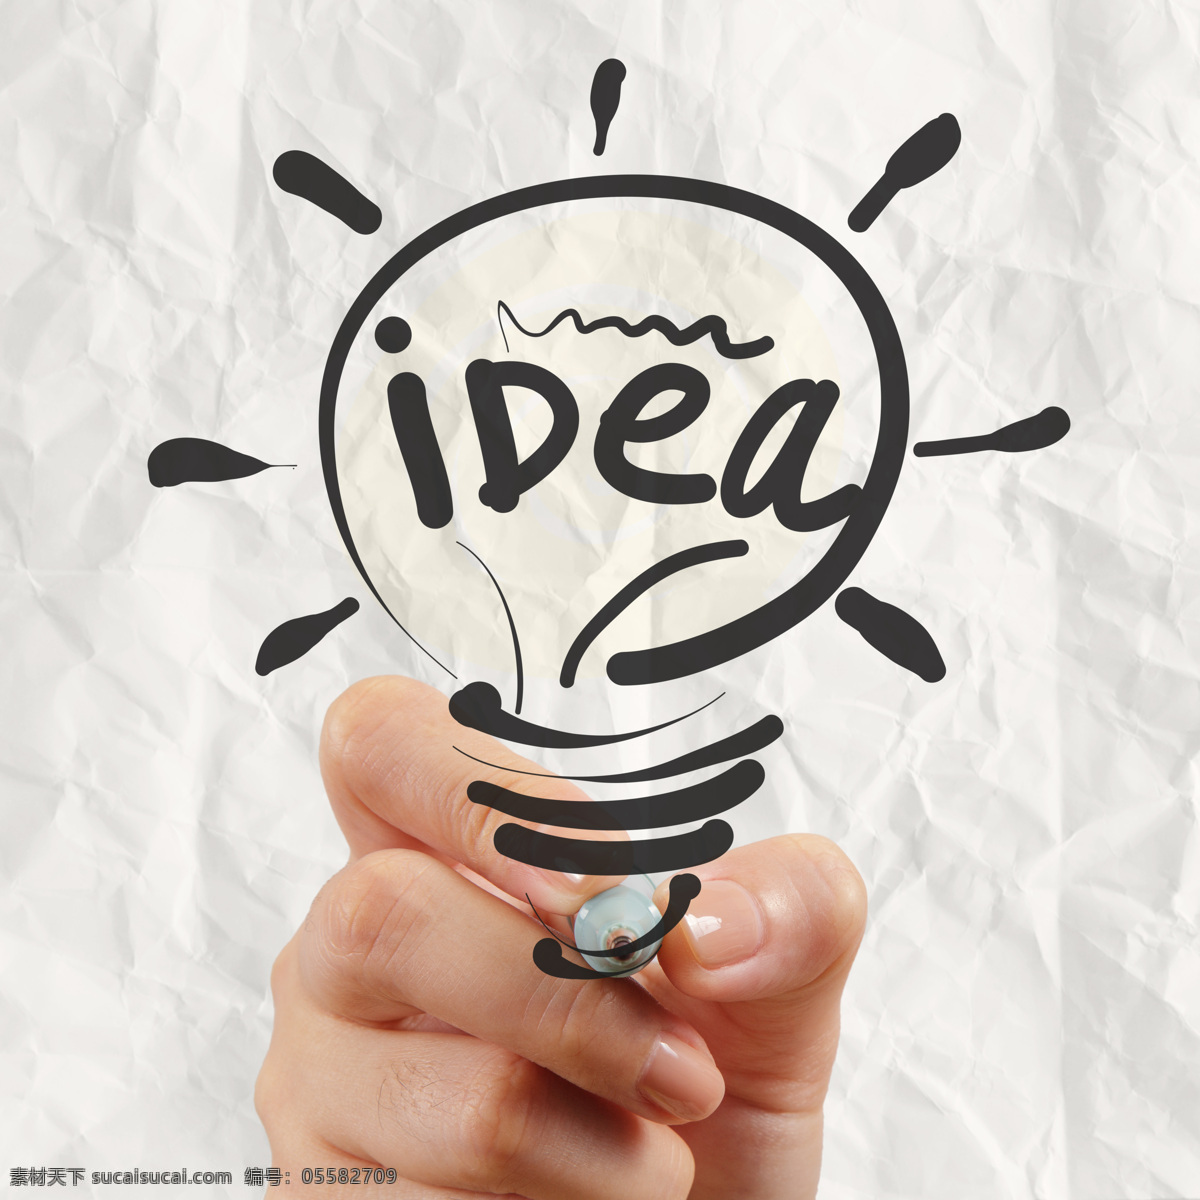 创意 想法 电灯泡 握笔手势 电灯 手绘电灯 创意想法 创新思维 现代商务 商务金融 其他类别 生活百科 白色